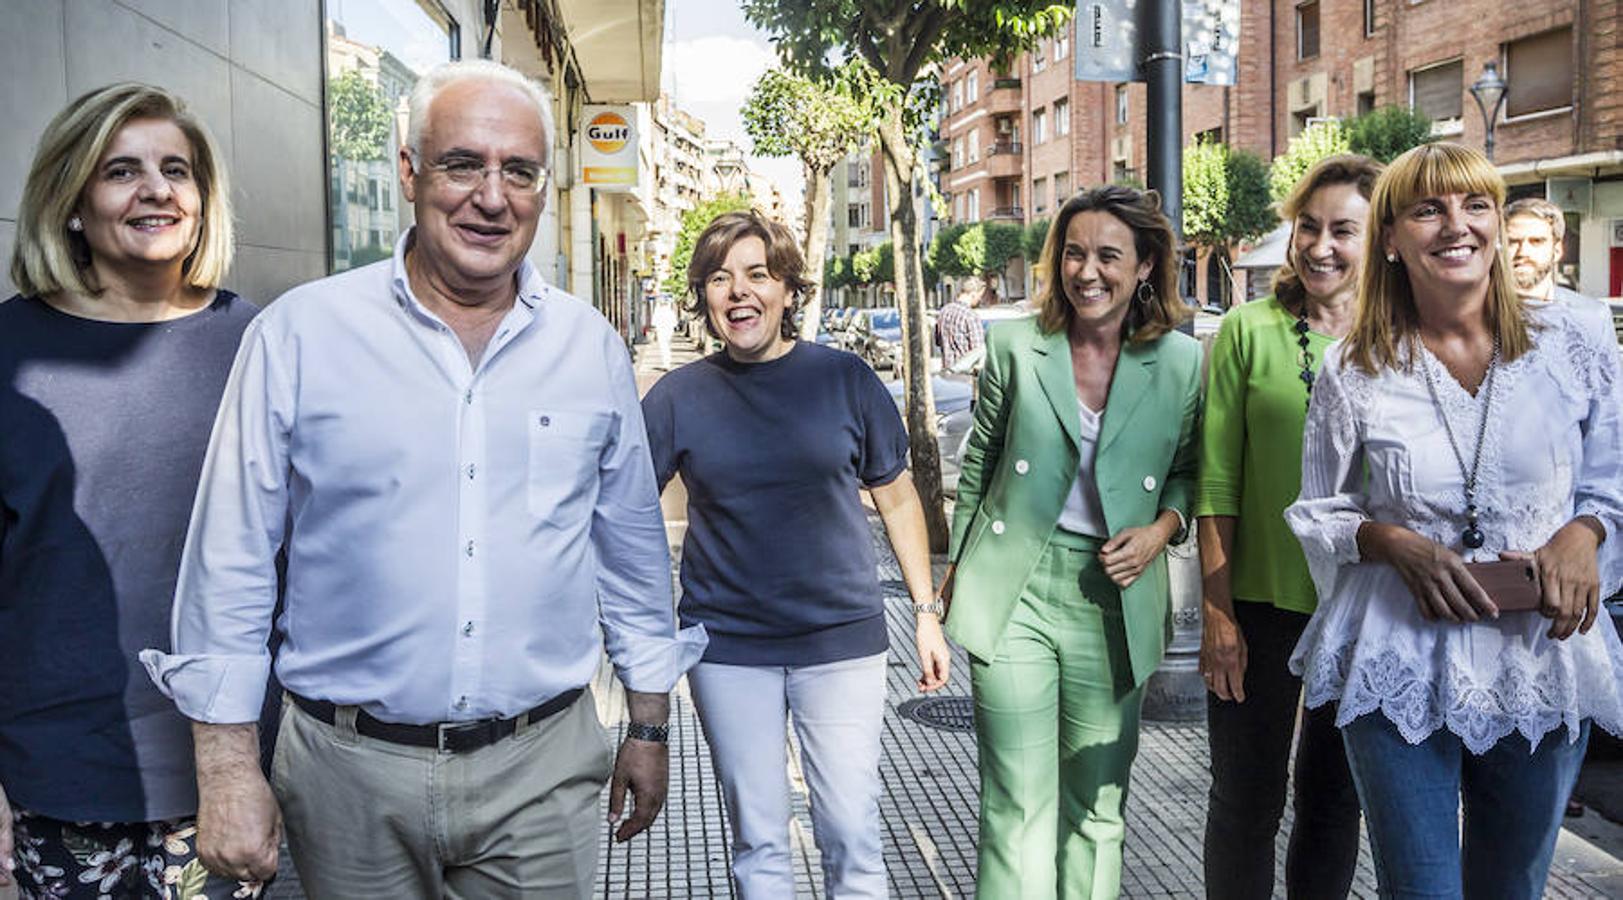 La andidata a la Presidencia del PP Soraya Sáenz de Santamaría ha asegurado hoy en Logroño que es, respecto al resto de aspirantes a presidir el partido, la «más idónea para gobernar en este momento» y la que «podría ayudar a recuperar el voto para el PP» de aquellos que han dejado de hacerlo.